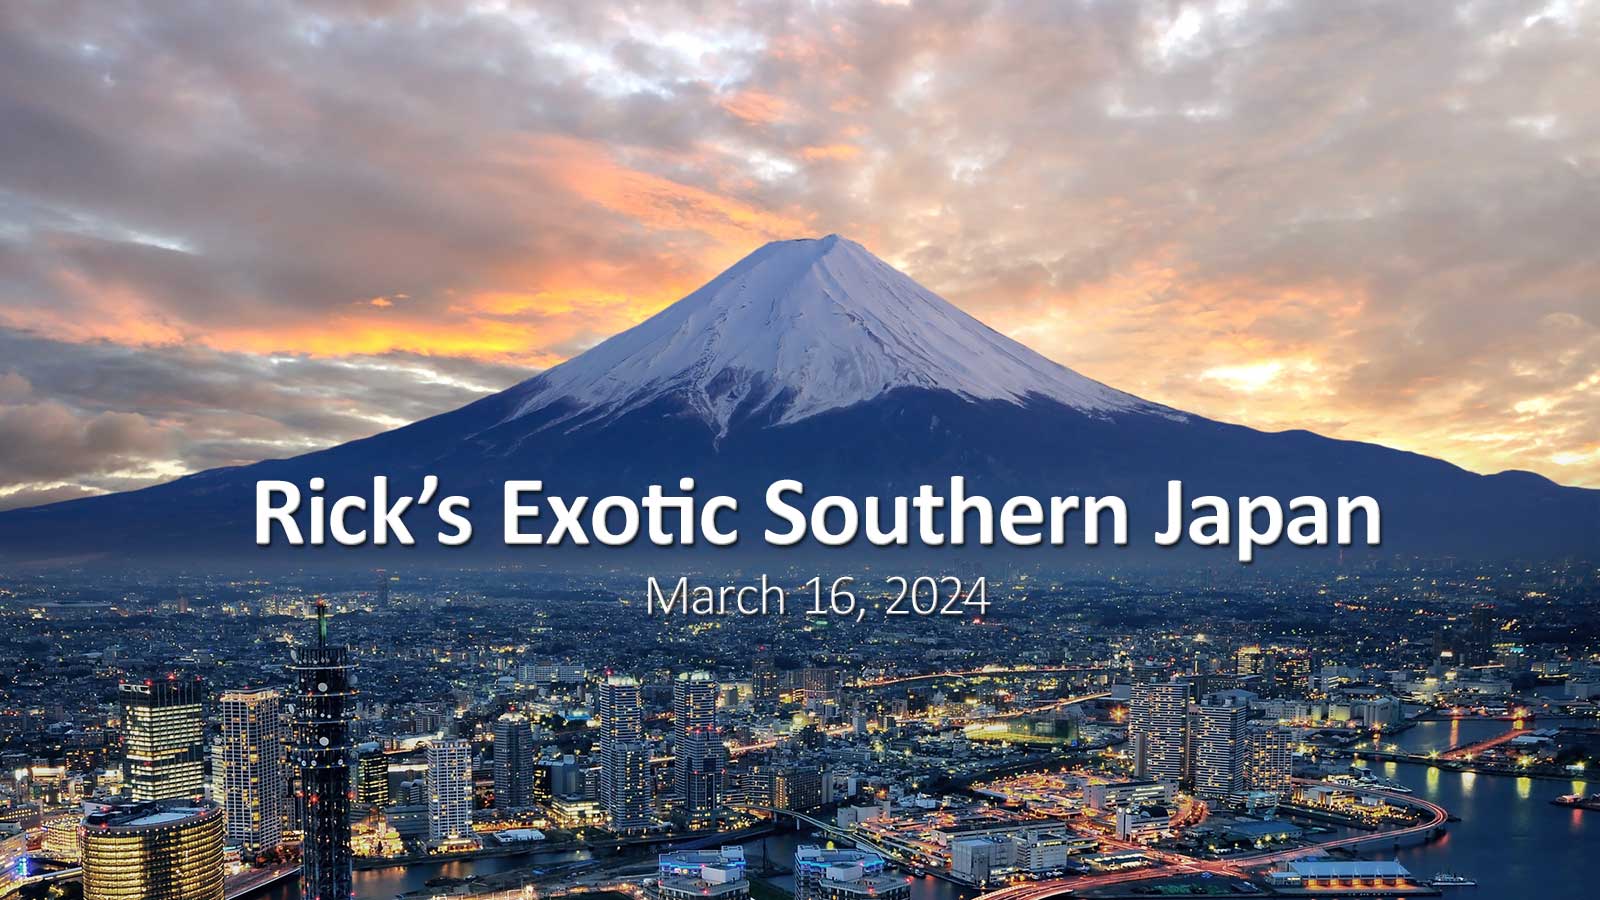 Rick's Exotic Southern Japan